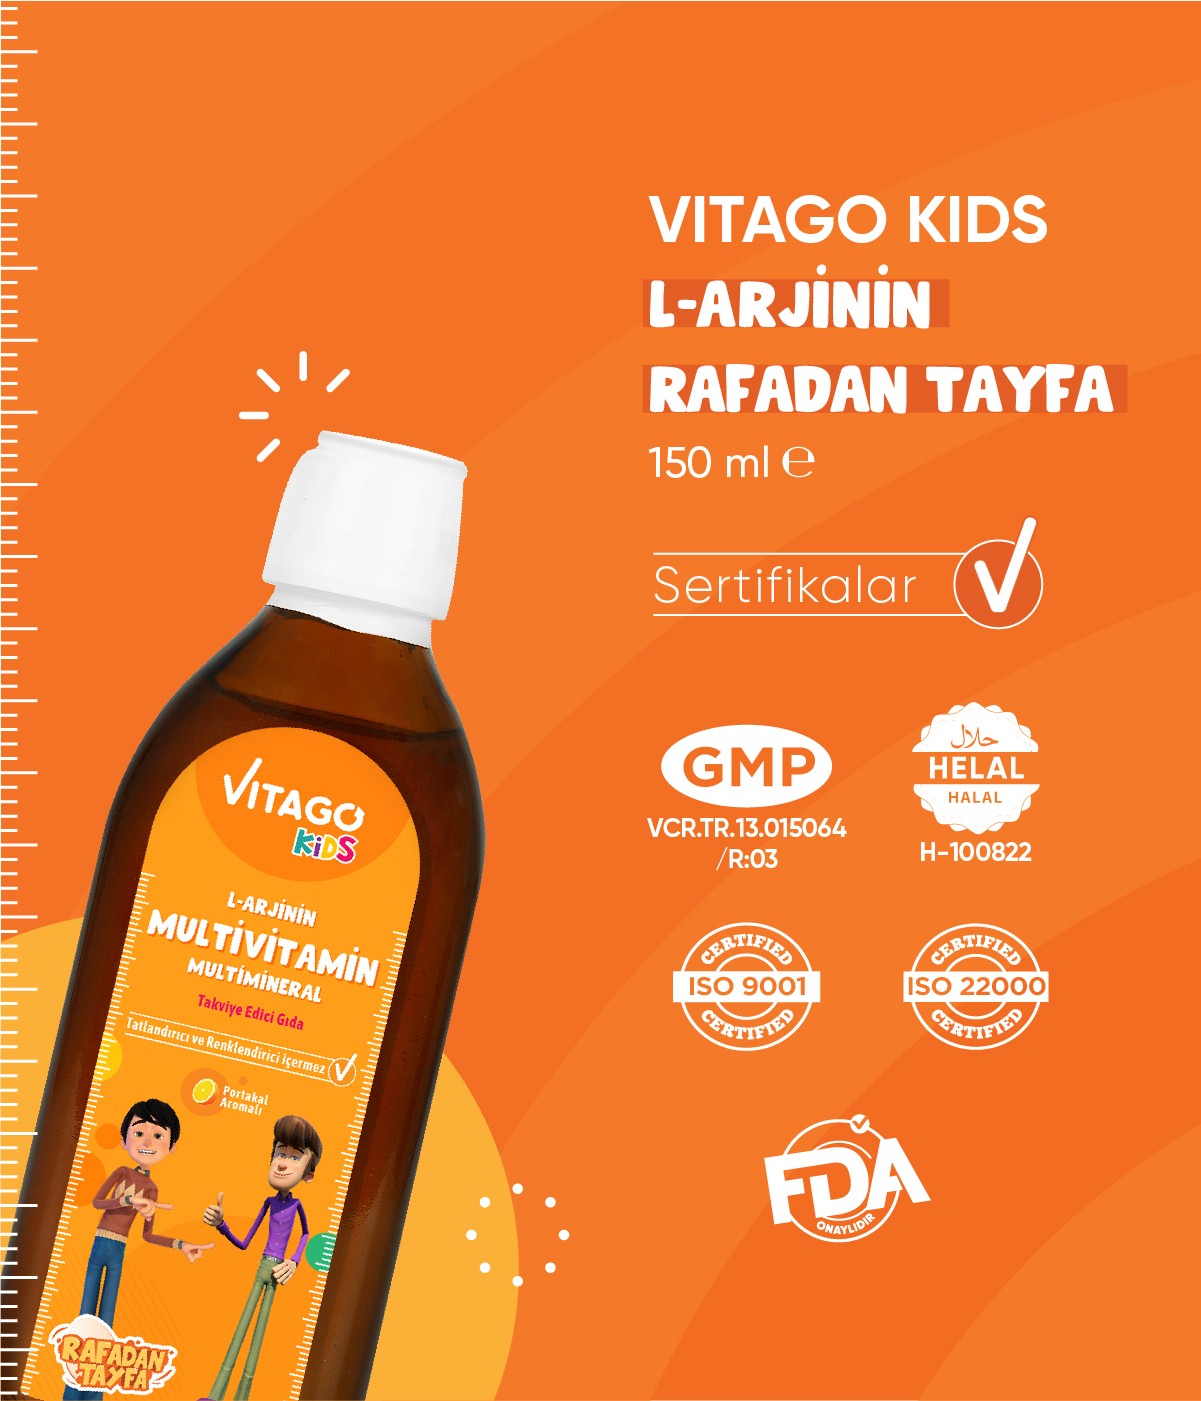 Vitago Kids Rafadan Tayfa L-Arjinin Takviye Edici Gıda